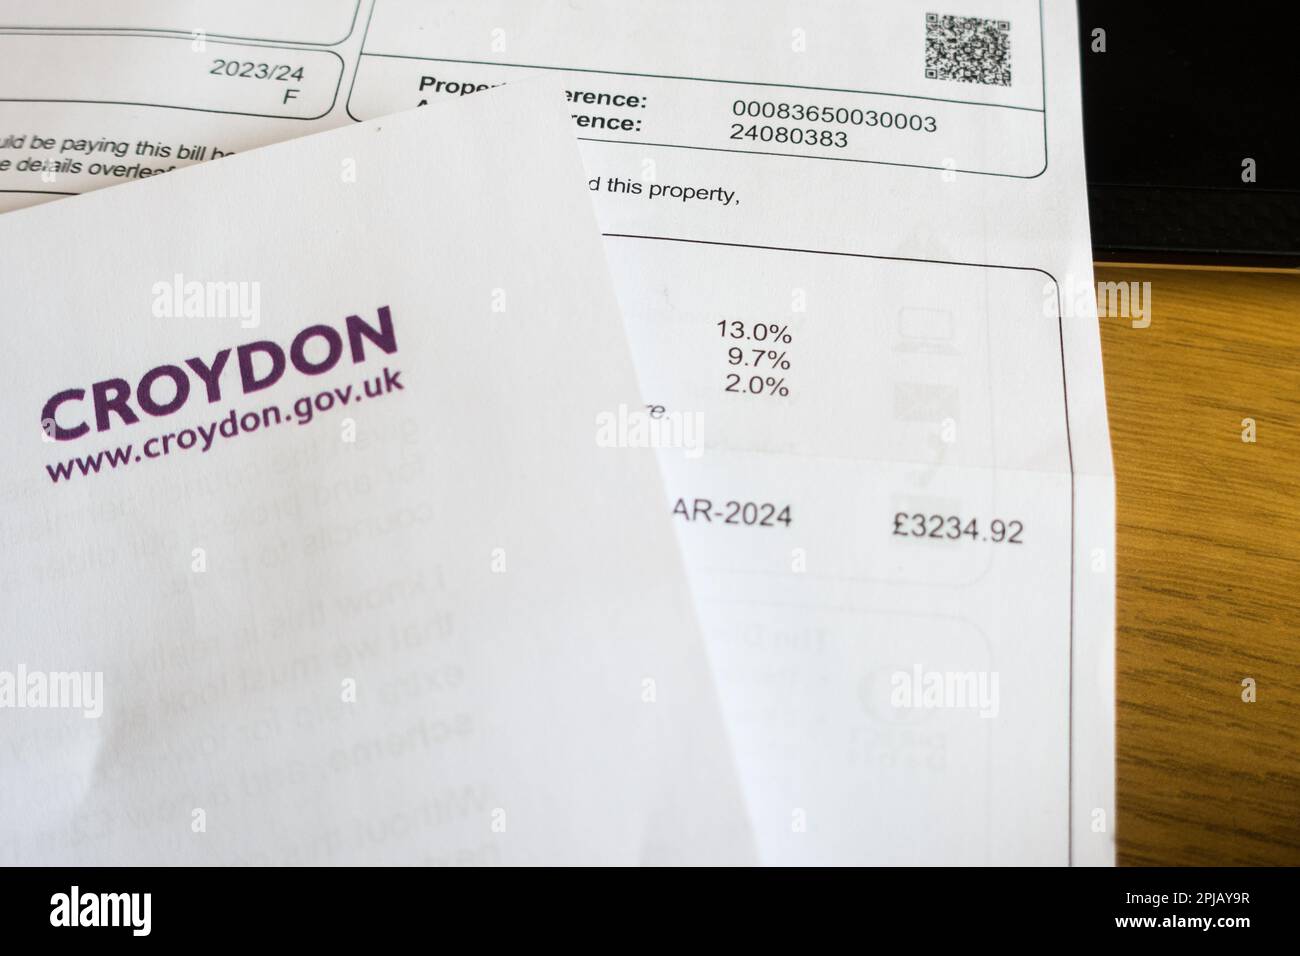 La legge fiscale del consiglio di Croydon mostra un aumento del 15% rispetto agli anni precedenti, costringendo il pubblico a pagare per la cattiva gestione dei precedenti consiglieri Foto Stock